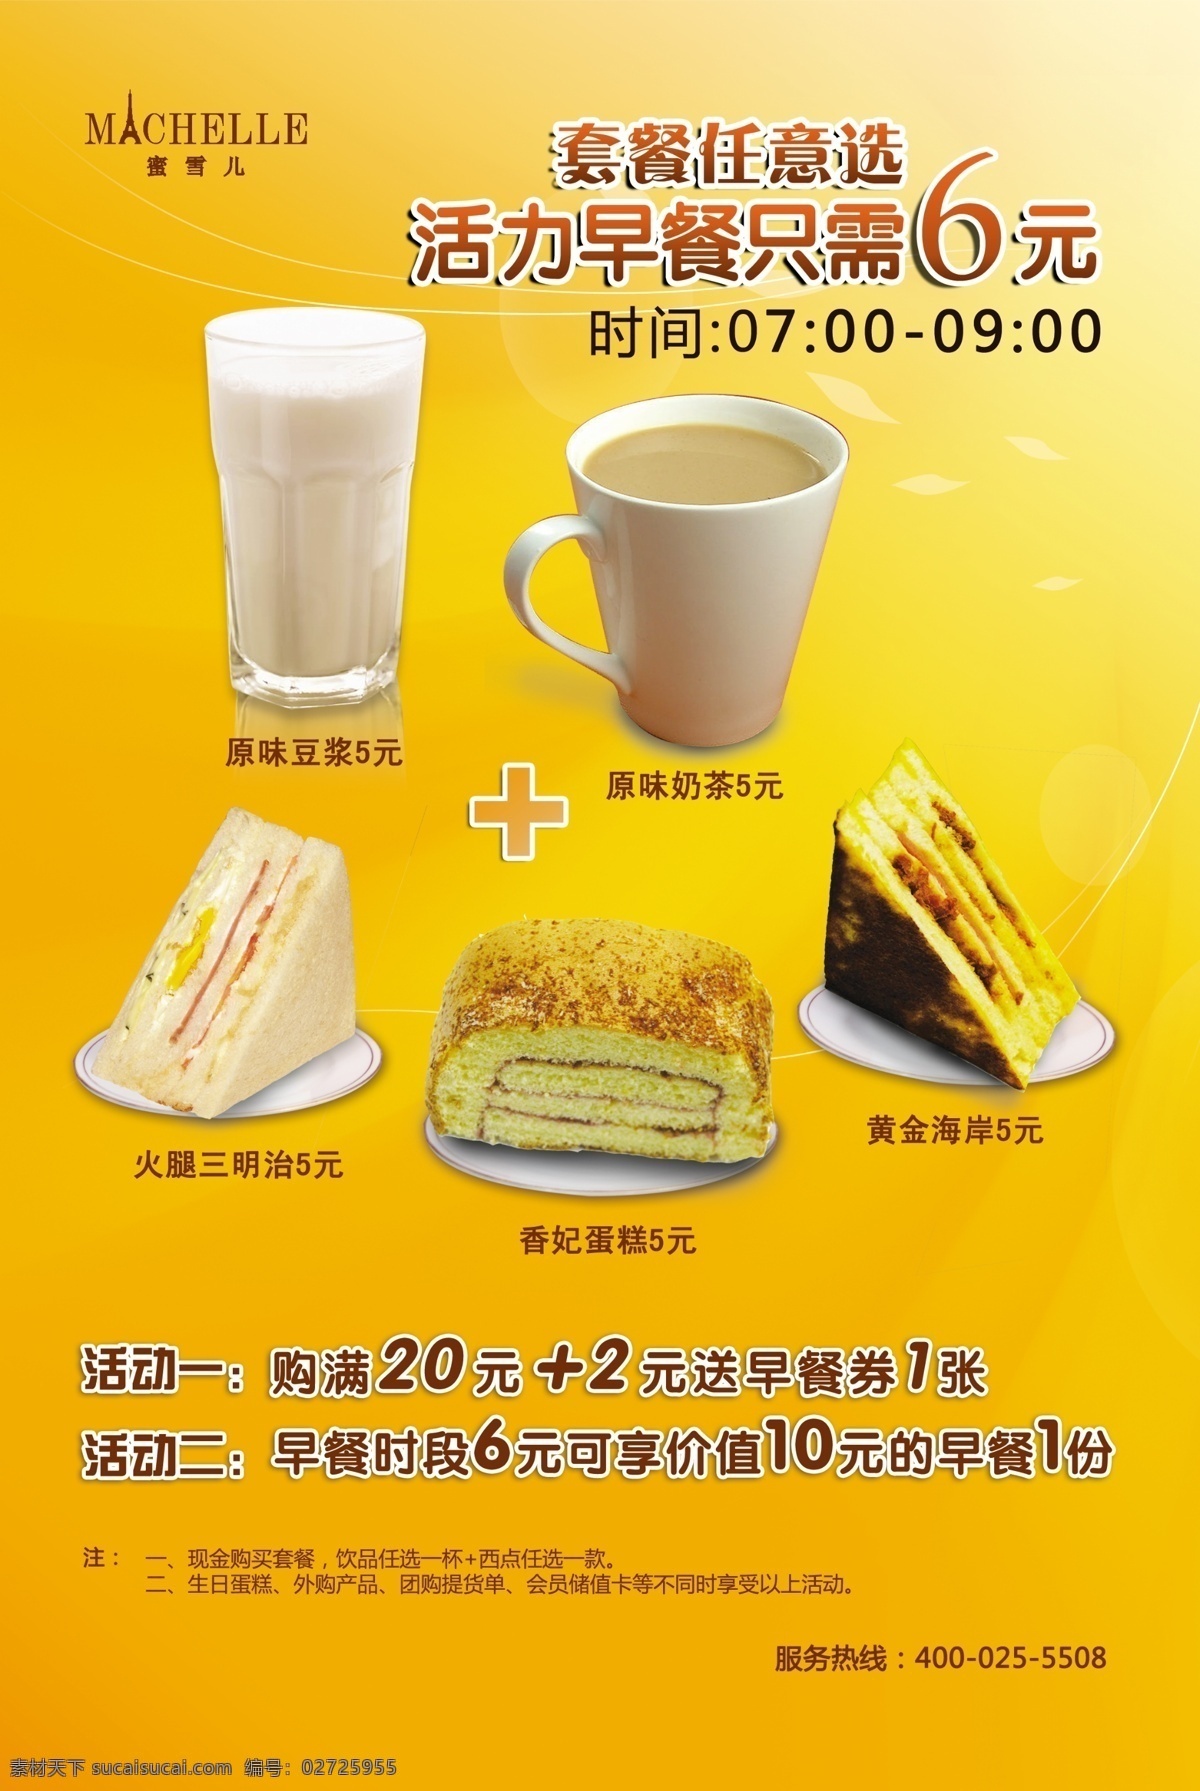 豆浆 广告设计模板 健康 绿色 面包 牛奶 套餐 营养 早餐 组合 海报 模板下载 营养早餐海报 早点 西点 源文件 psd源文件 餐饮素材